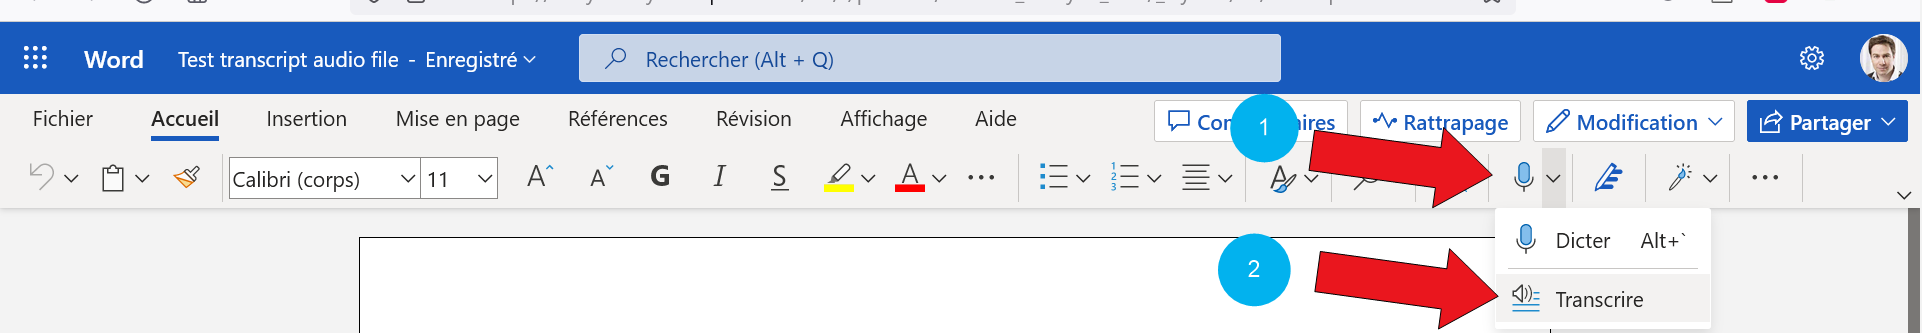 transcribe icon 1 arrows